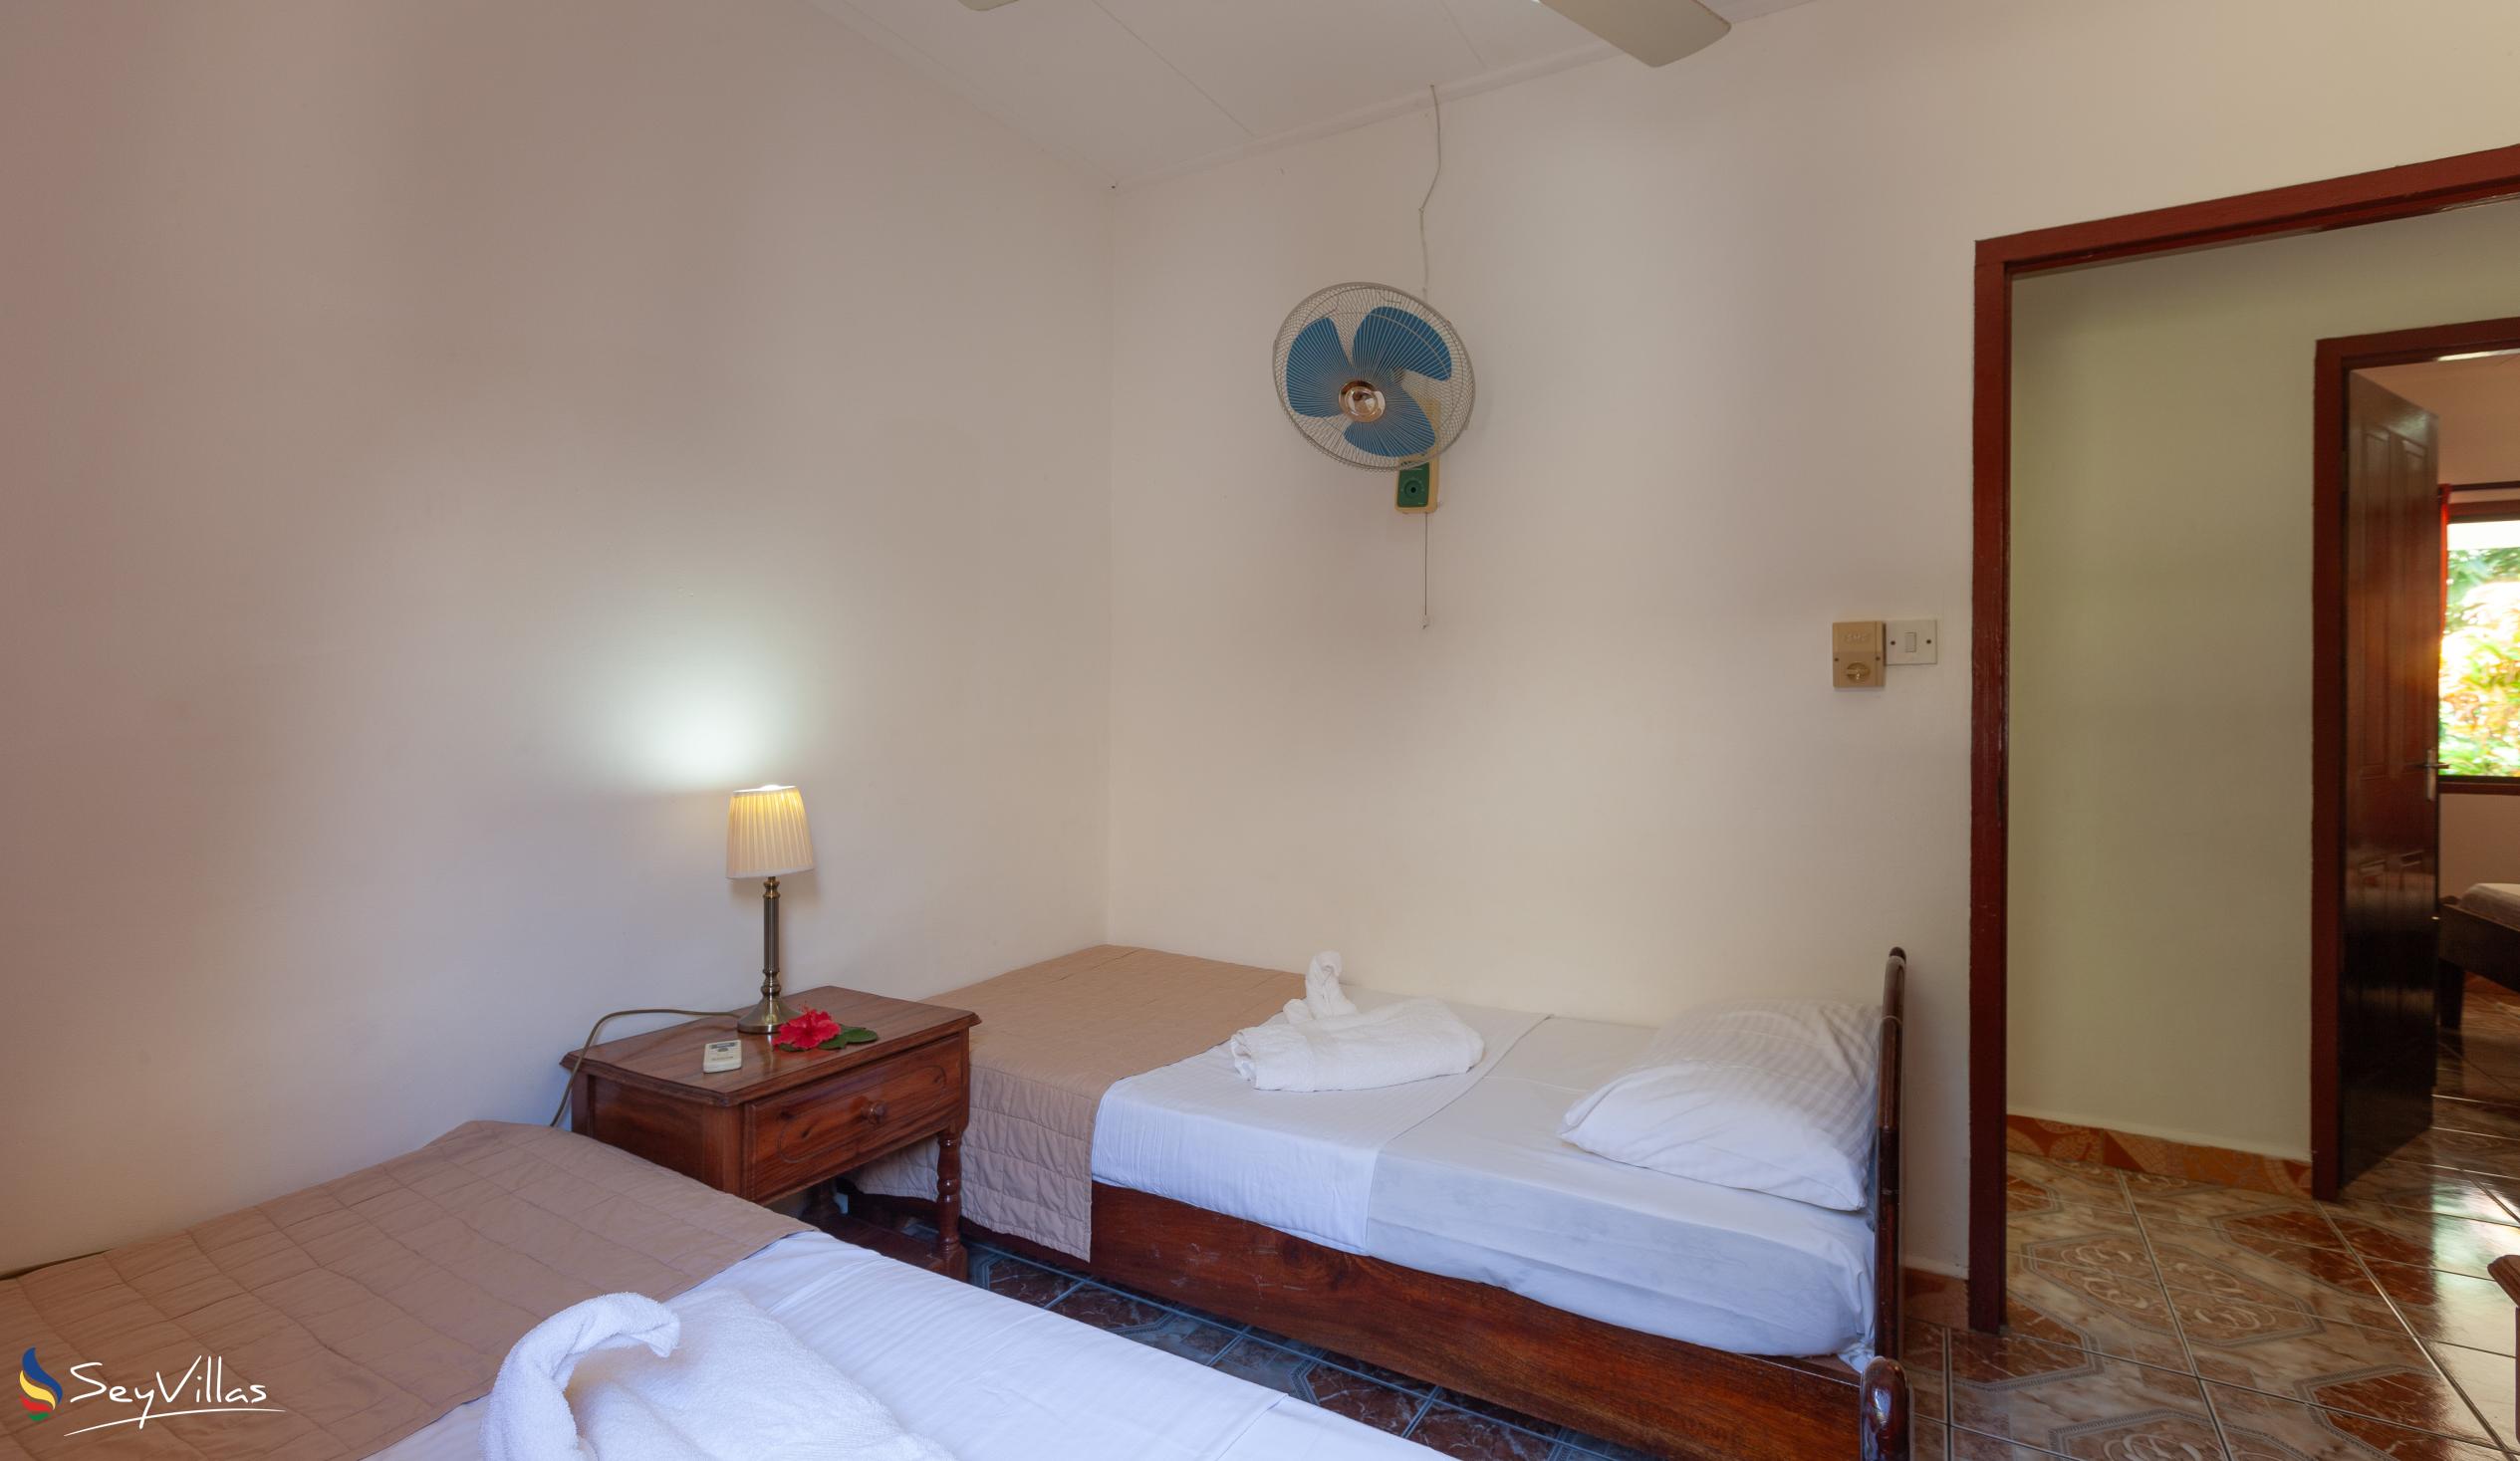 Foto 51: Dan Kazou - Appartamento con 2 camere - La Digue (Seychelles)